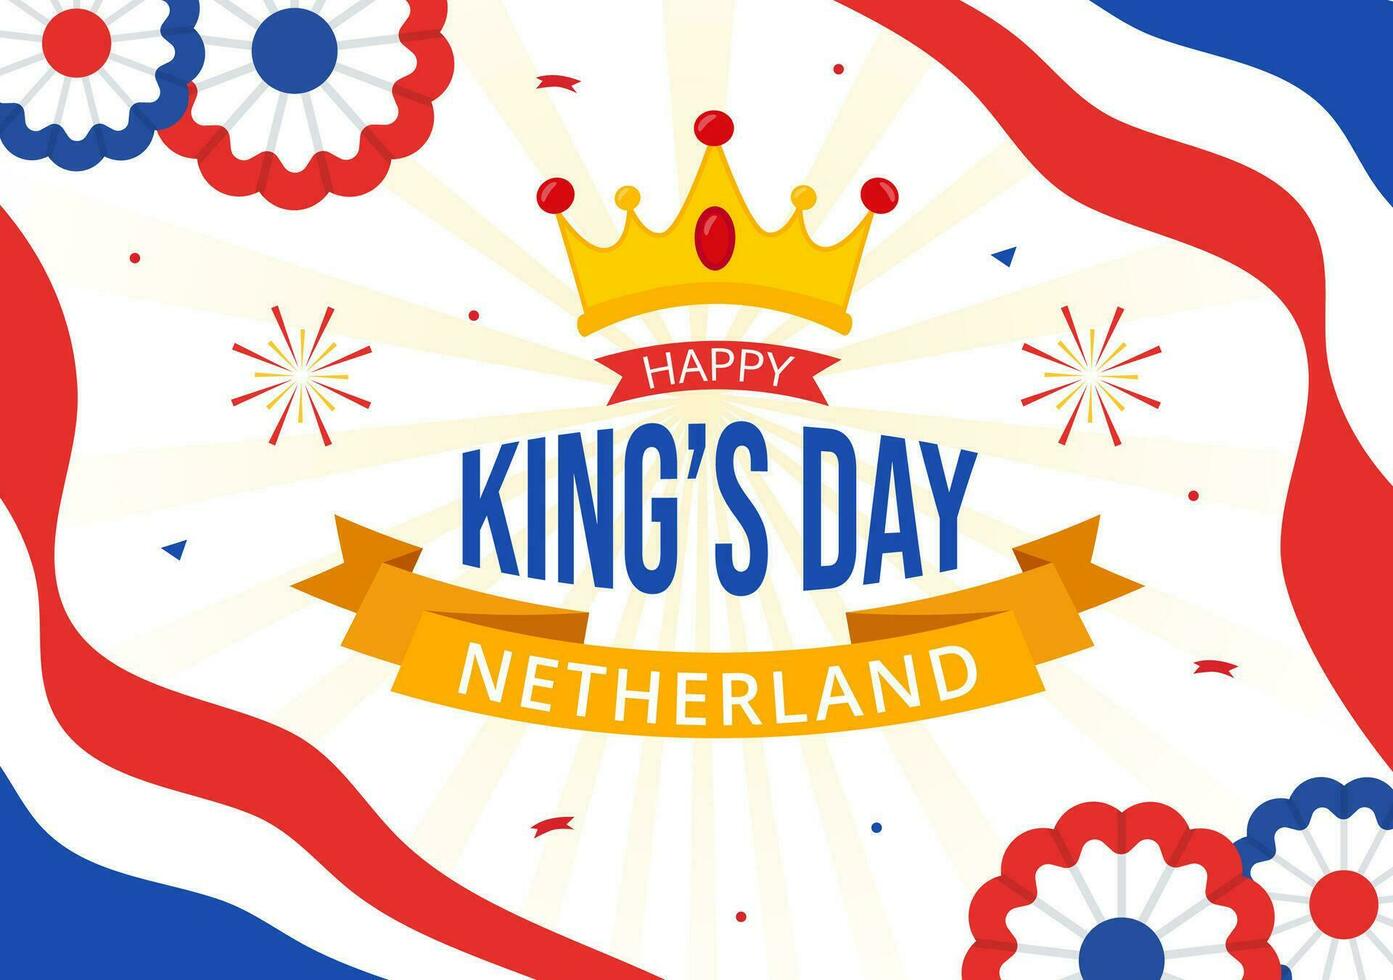 gelukkig koningen Nederland dag vector illustratie Aan 27 april met golvend vlaggen en lint in koning viering vlak tekenfilm achtergrond ontwerp